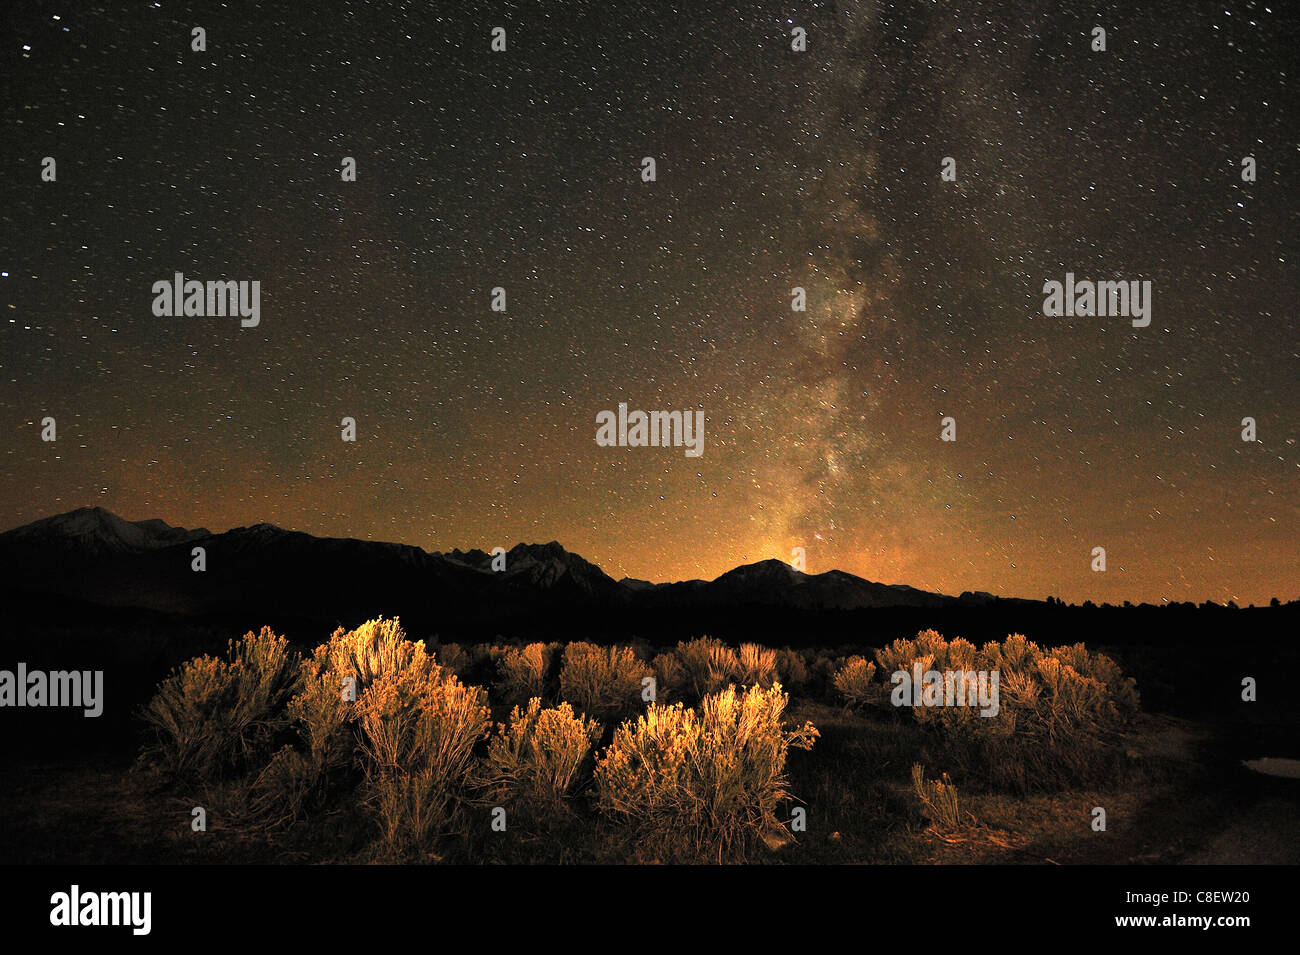 Natürliche, im Freien, Whirlpool, Sterne in der Nacht, Sierra Nevada, Bergen, in der Nähe von Mammoth Lakes, Kalifornien, USA, Vereinigte Staaten, amerik. Stockfoto